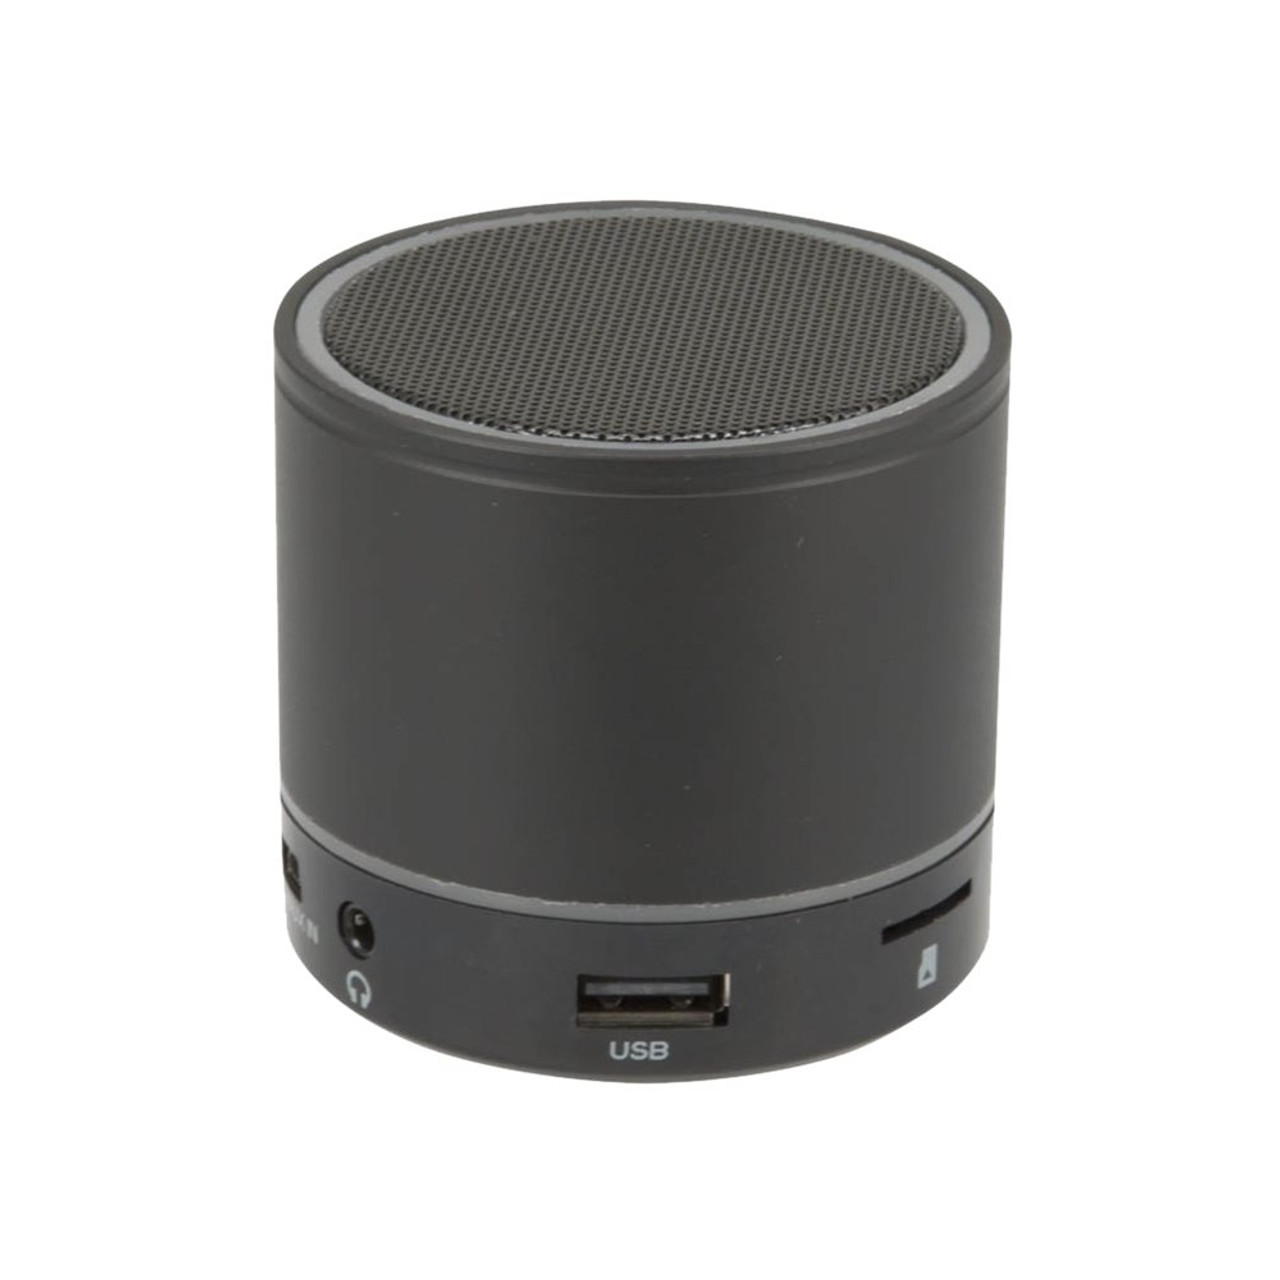 iLive - Portable Bluetooth Speaker - Black